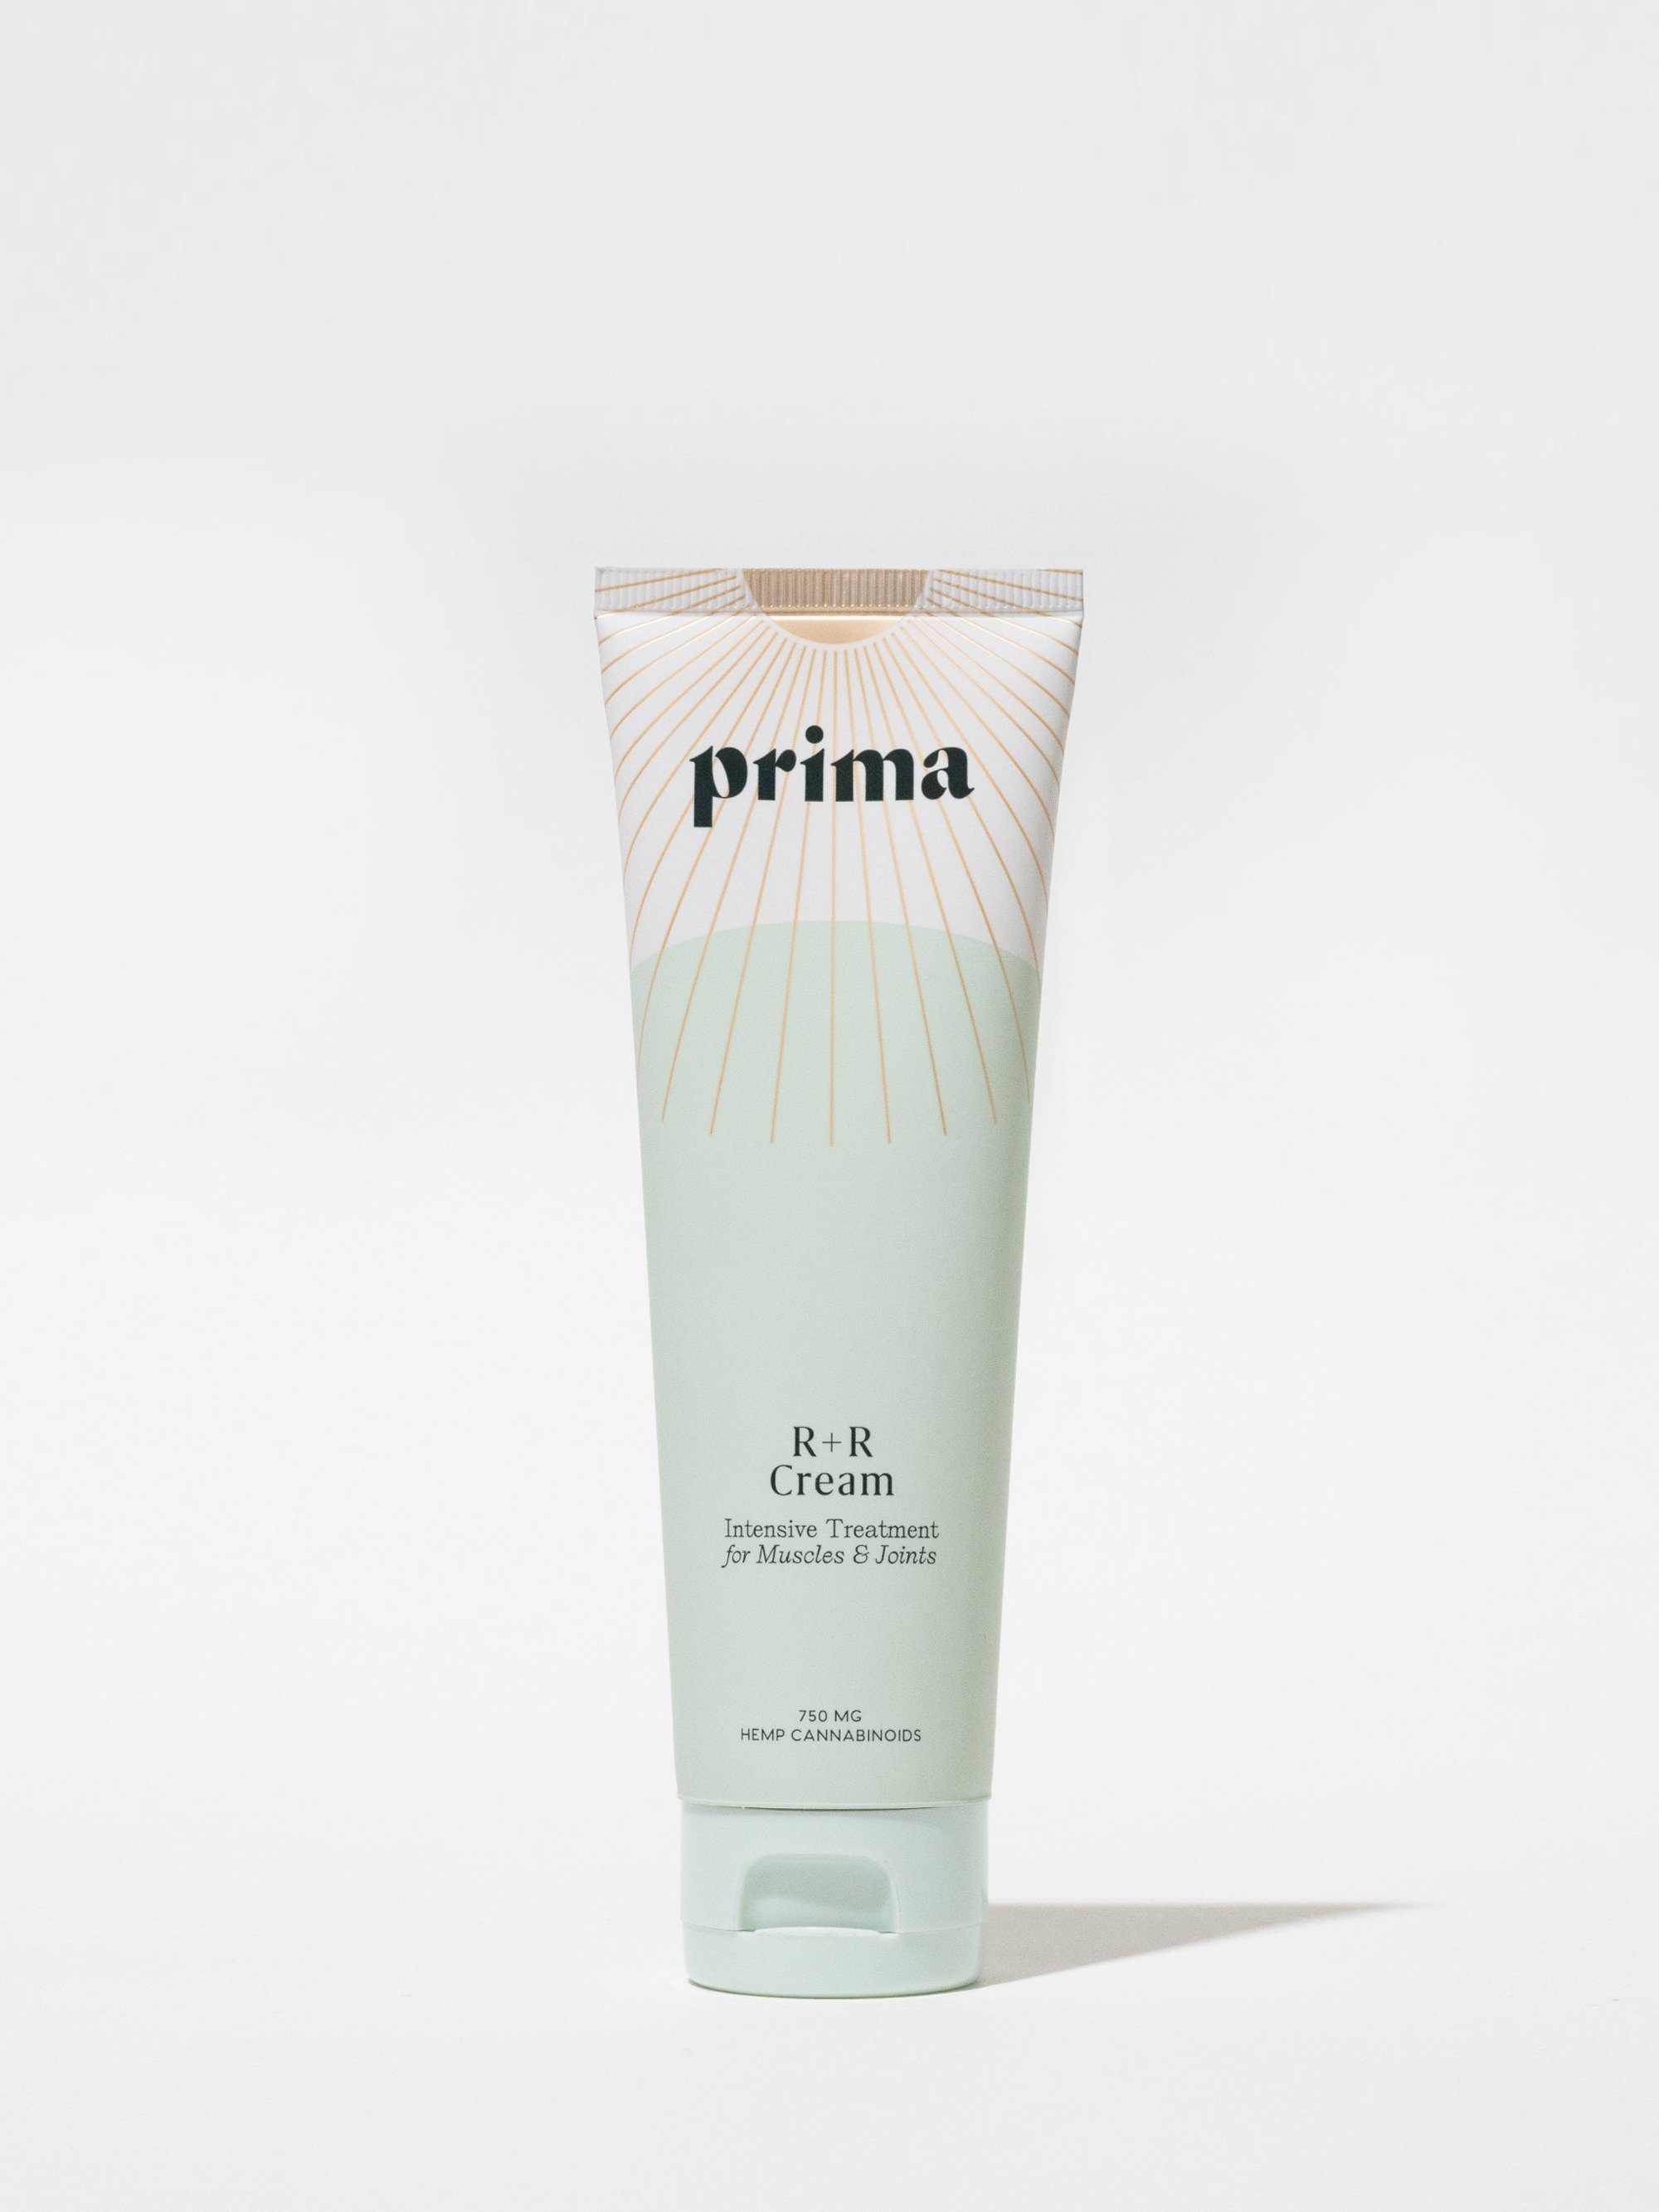 Prima R+R Cream